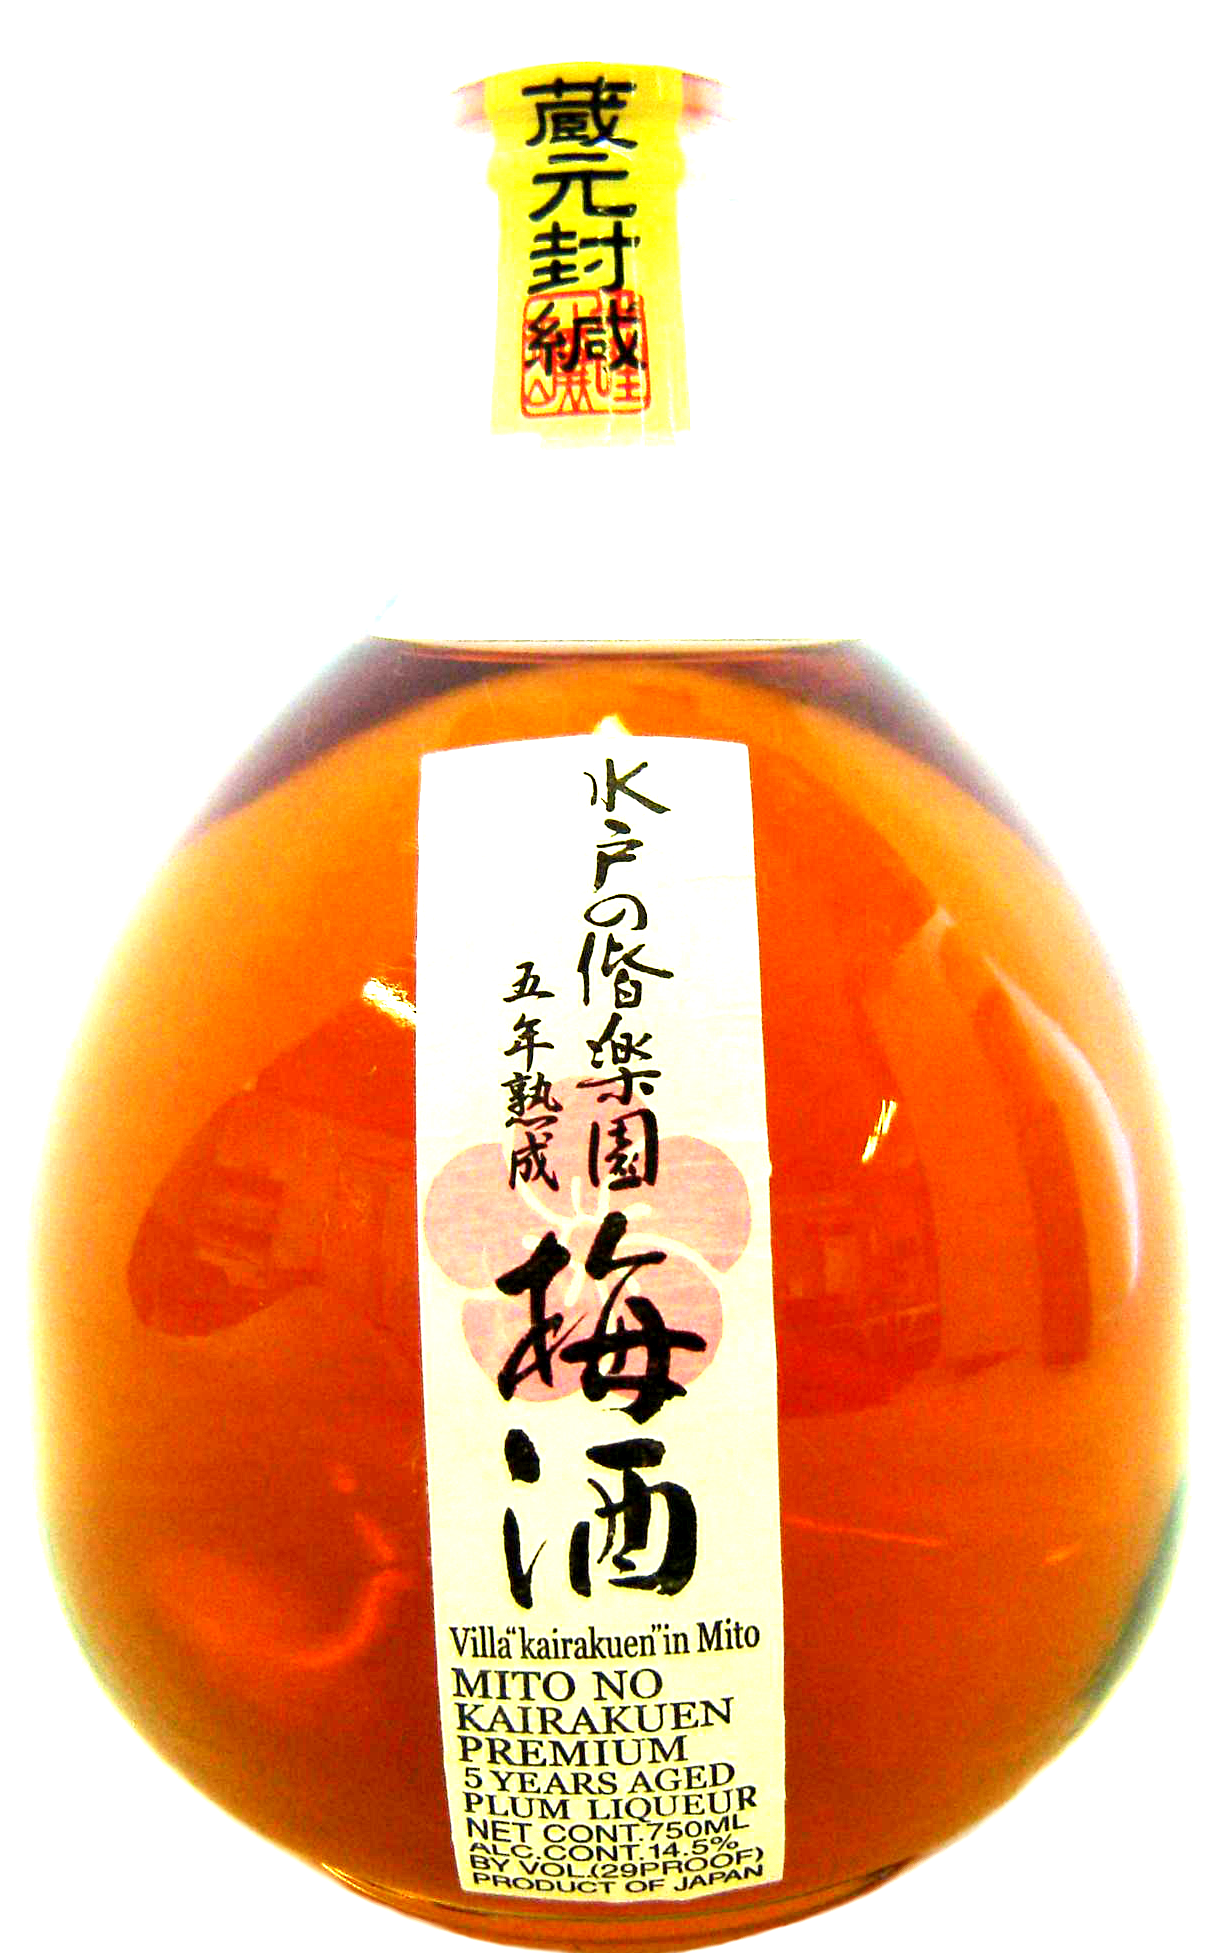 Hinoqi Tokyo Fragrance No. 5 REI